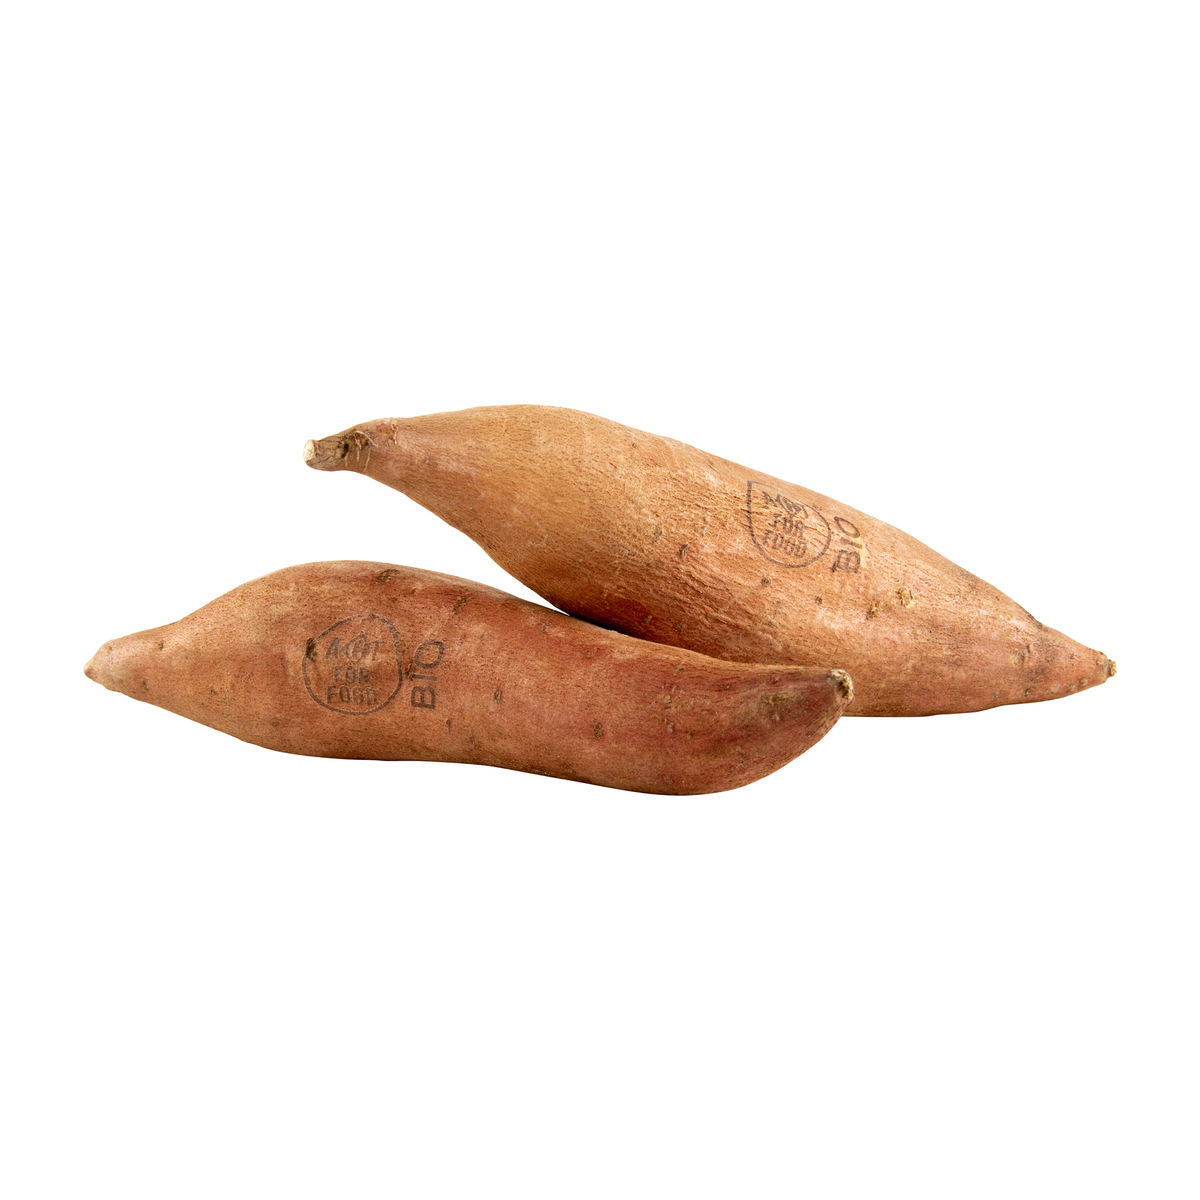 Bio Patates Douce - 2 pièces